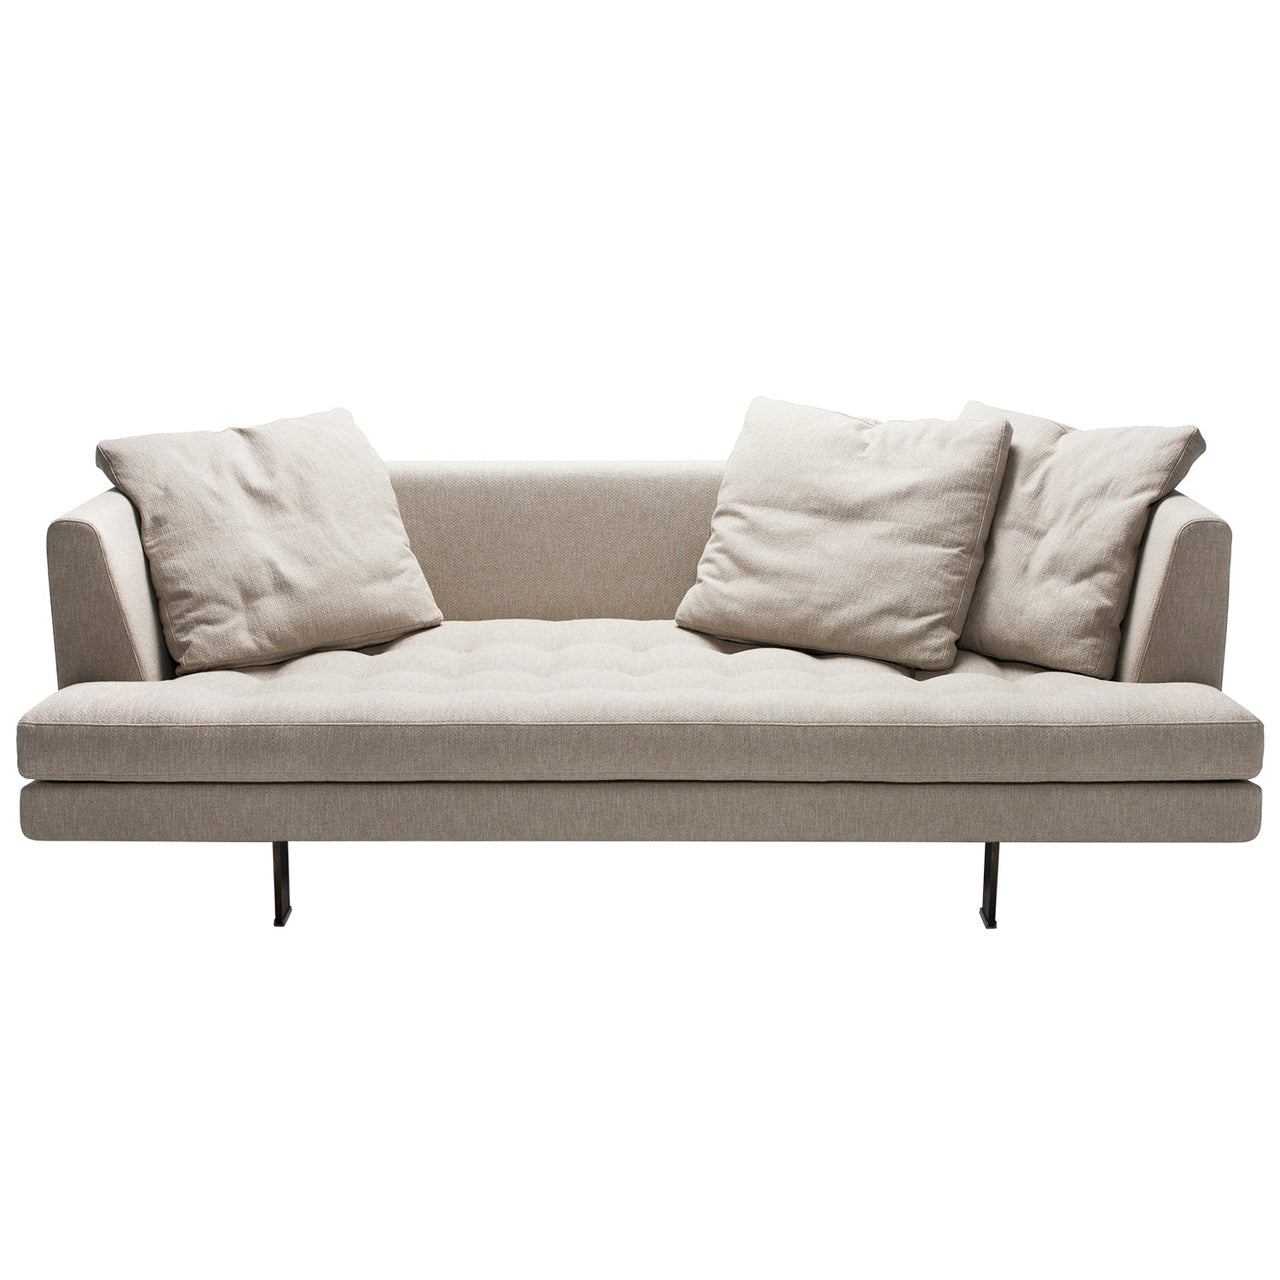 Edward 210 Sofa